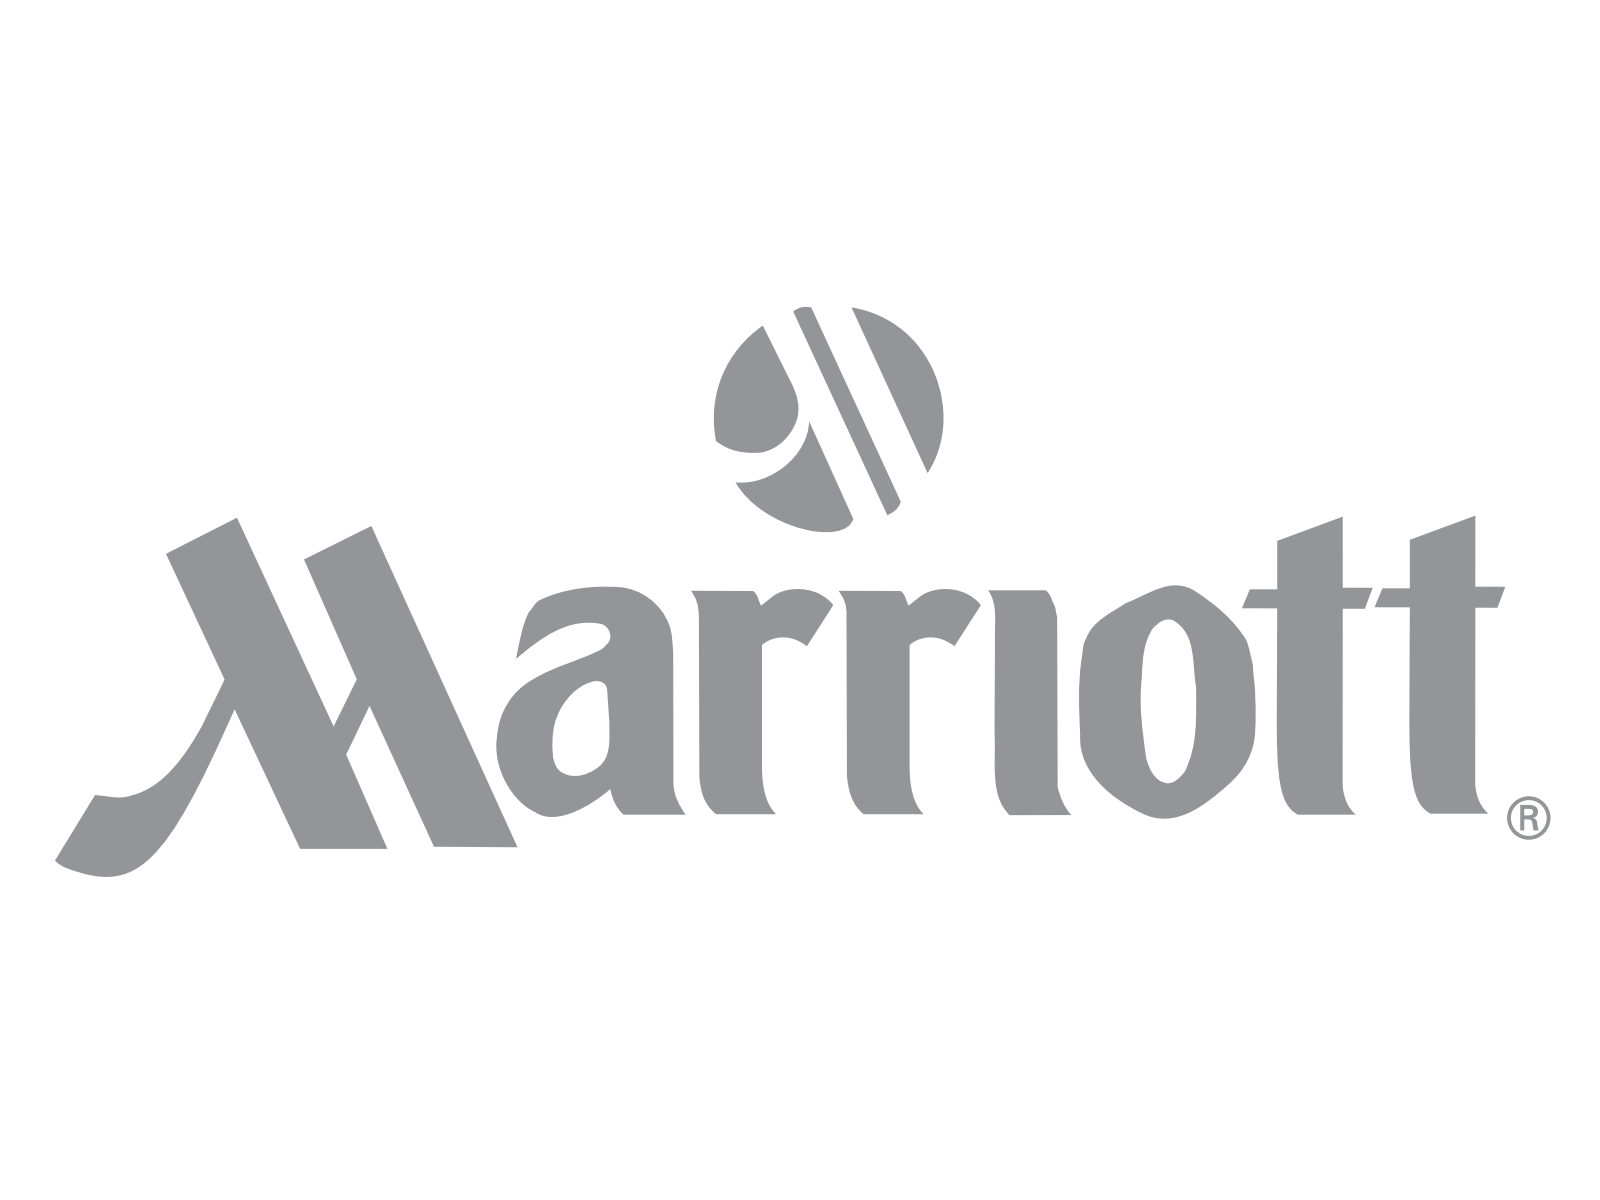 Marriott-logo-logotype.png